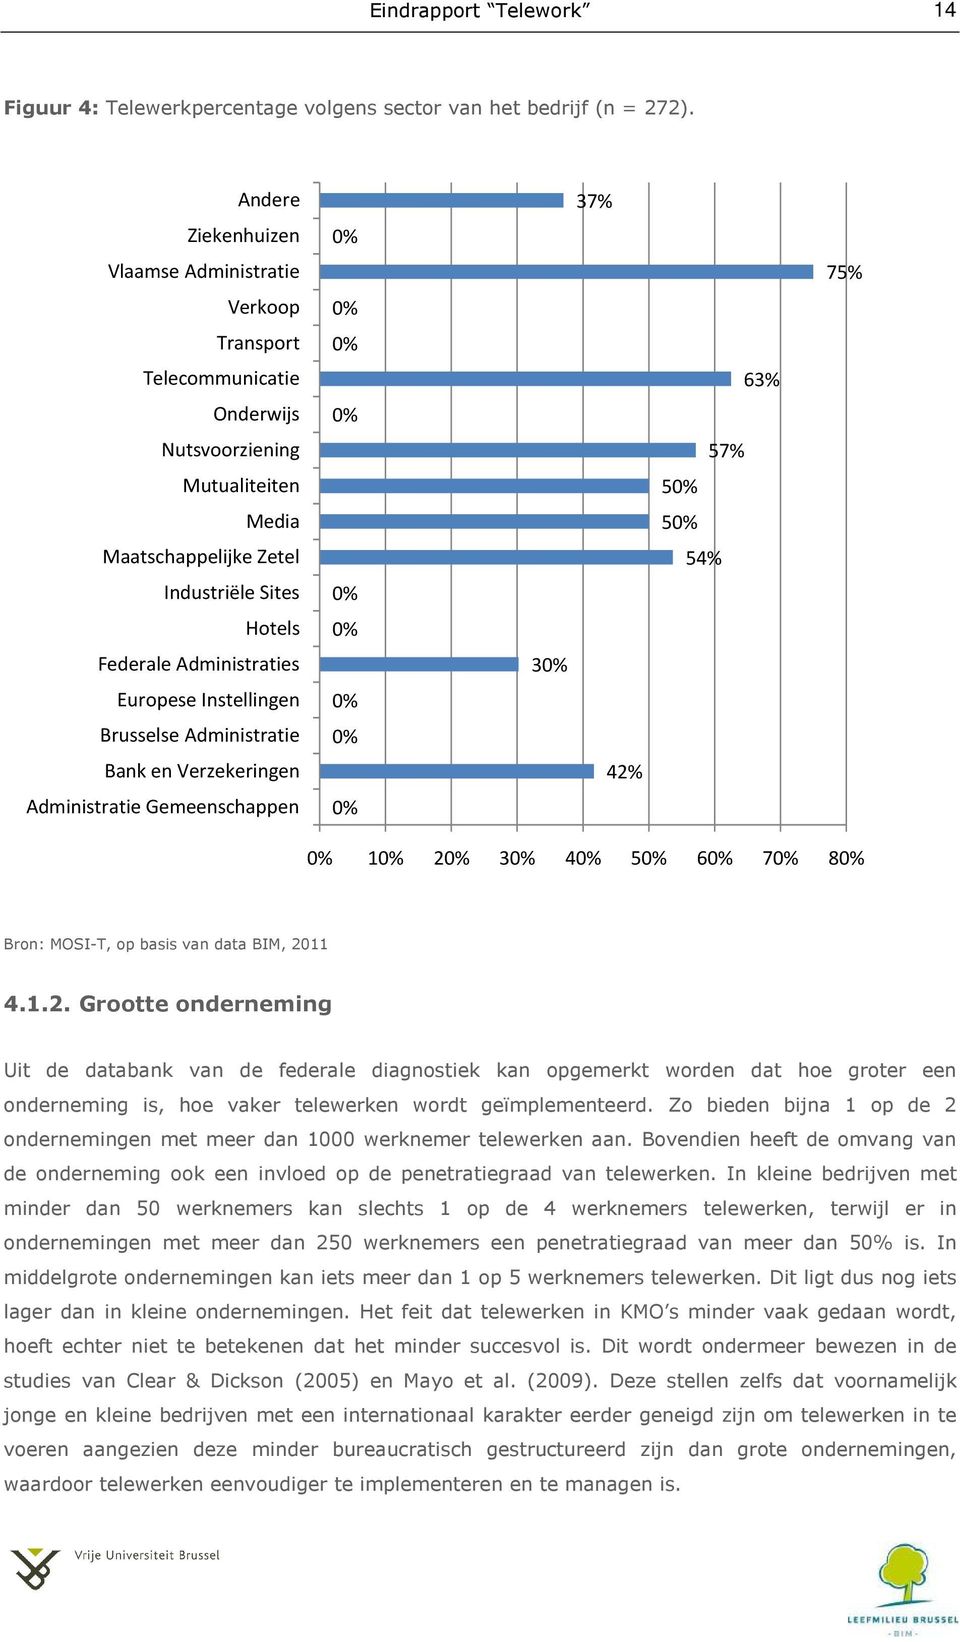 Europese Instellingen Brusselse Administratie Bank en Verzekeringen Administratie Gemeenschappen 0% 0% 0% 0% 0% 0% 0% 0% 0% 30% 37% 42% 63% 57% 50% 50% 54% 75% 0% 10% 20% 30% 40% 50% 60% 70% 80%